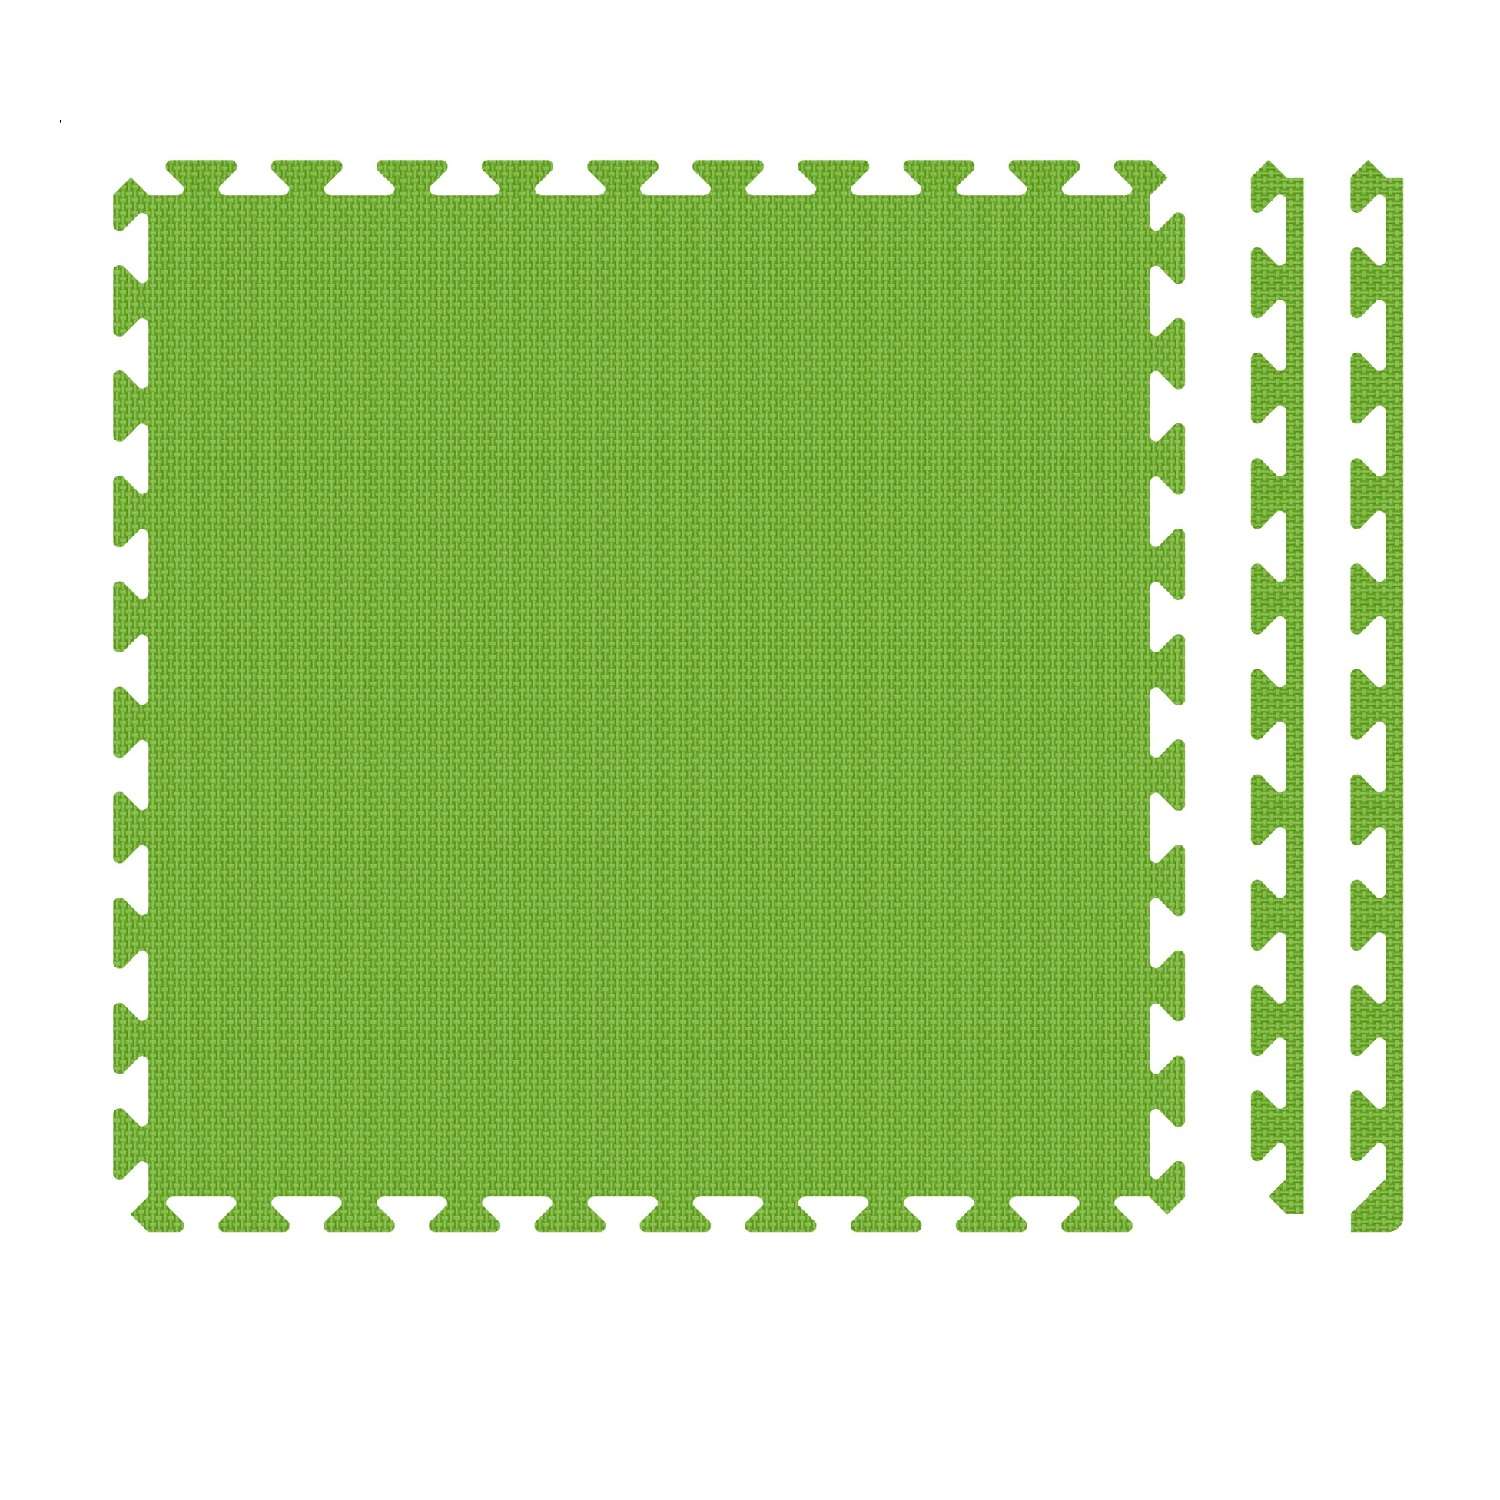 Развивающий детский коврик Eco cover мягкий пол для ползания зеленый 60х60 - фото 1